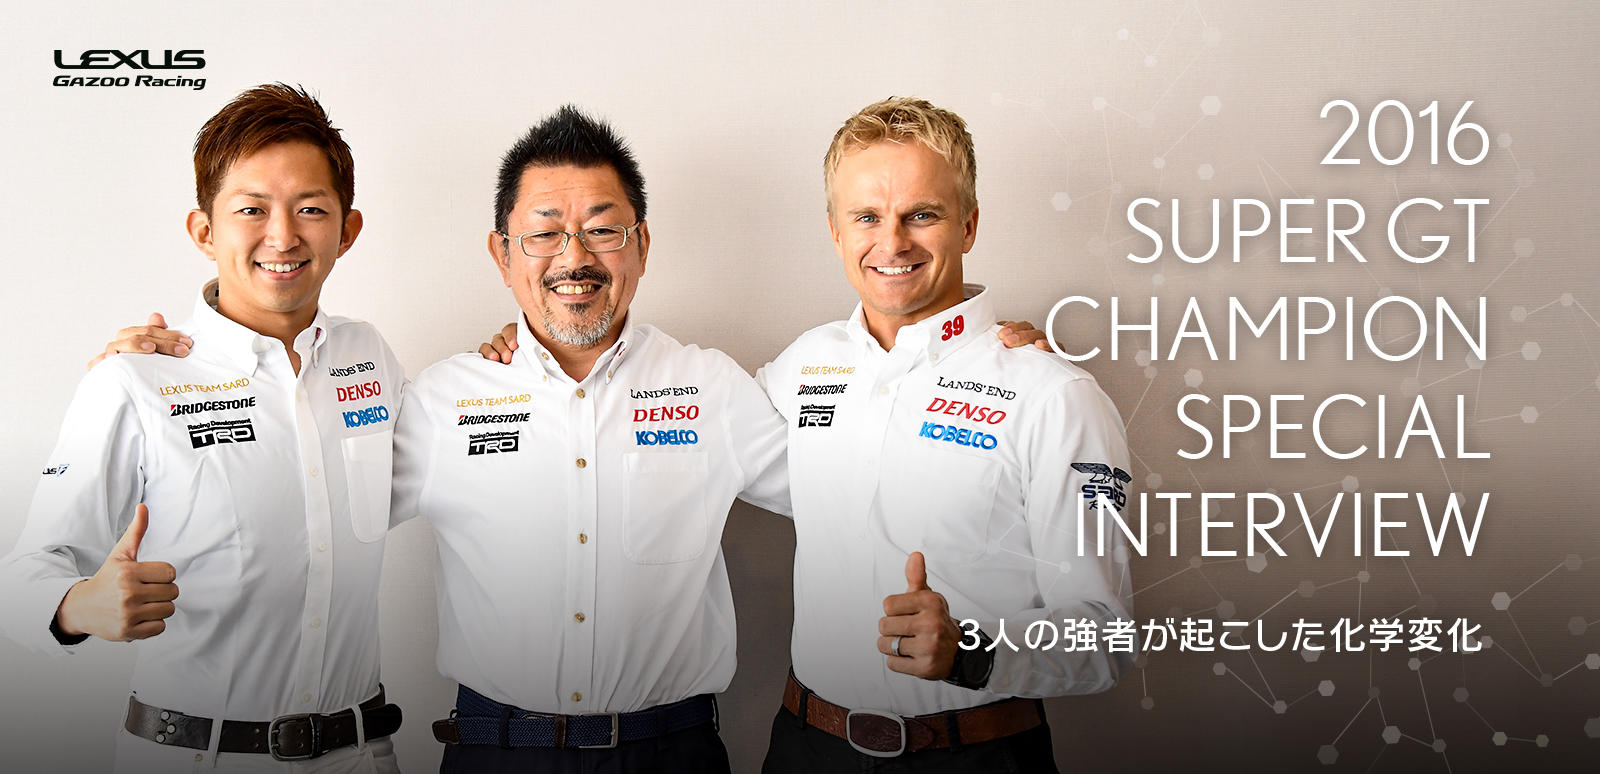 2016 SUPER GT チャンピオン獲得記念 スペシャルインタビュー ～3人の強者が起こした化学変化～